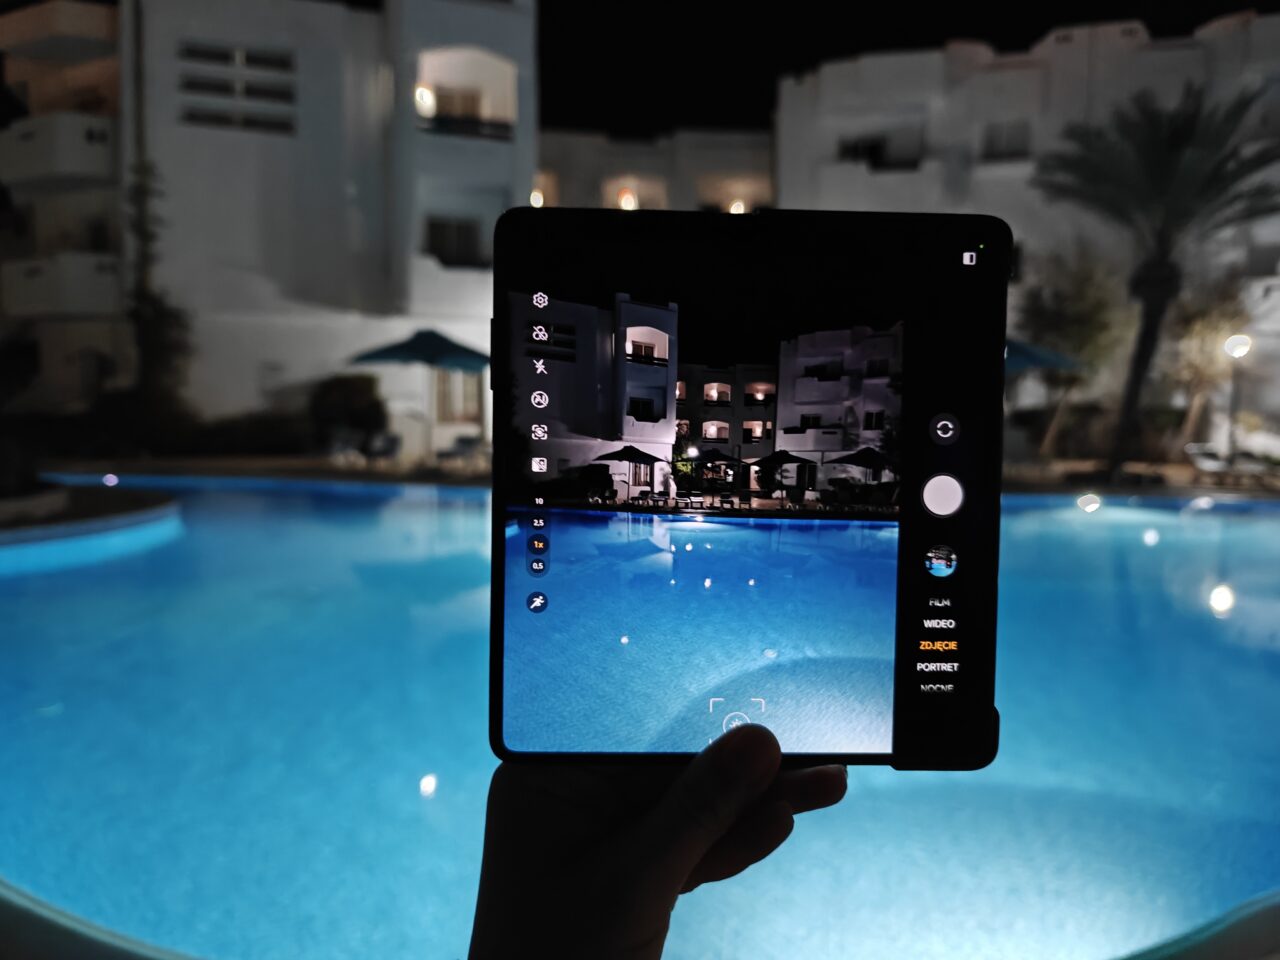 Osoba trzyma tablet z widokiem na basen i białe budynki nocą, obraz z tabletu jest wyświetlany w trybie kamery.